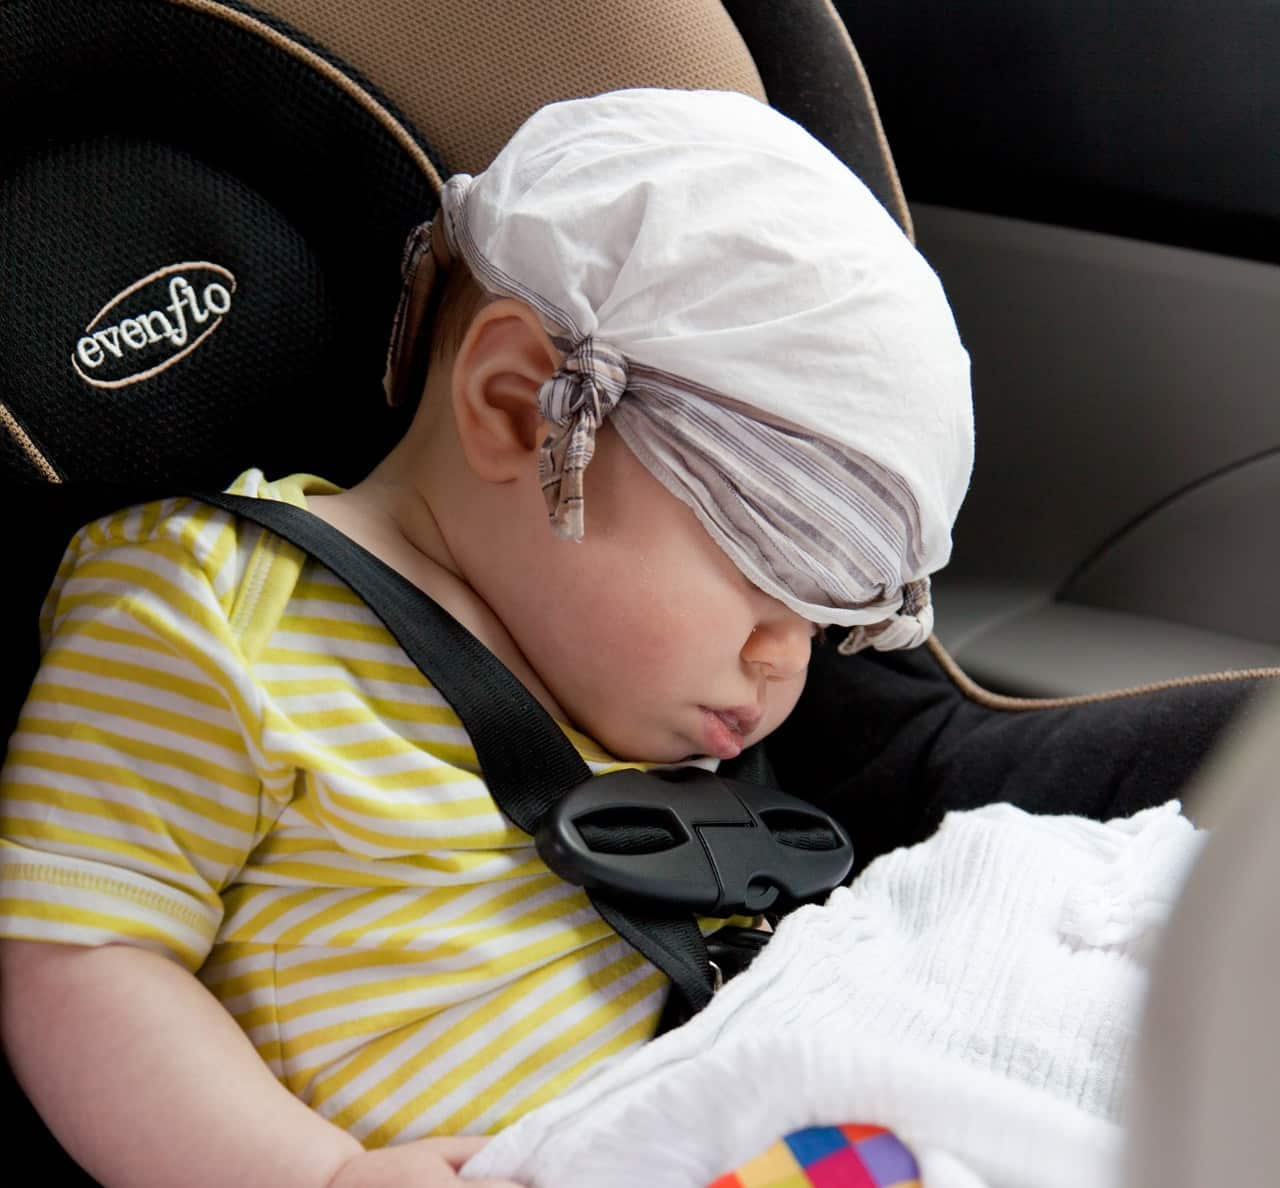 Ceinture de sécurité, siège enfant ou bébé : quelles sont les règles ?